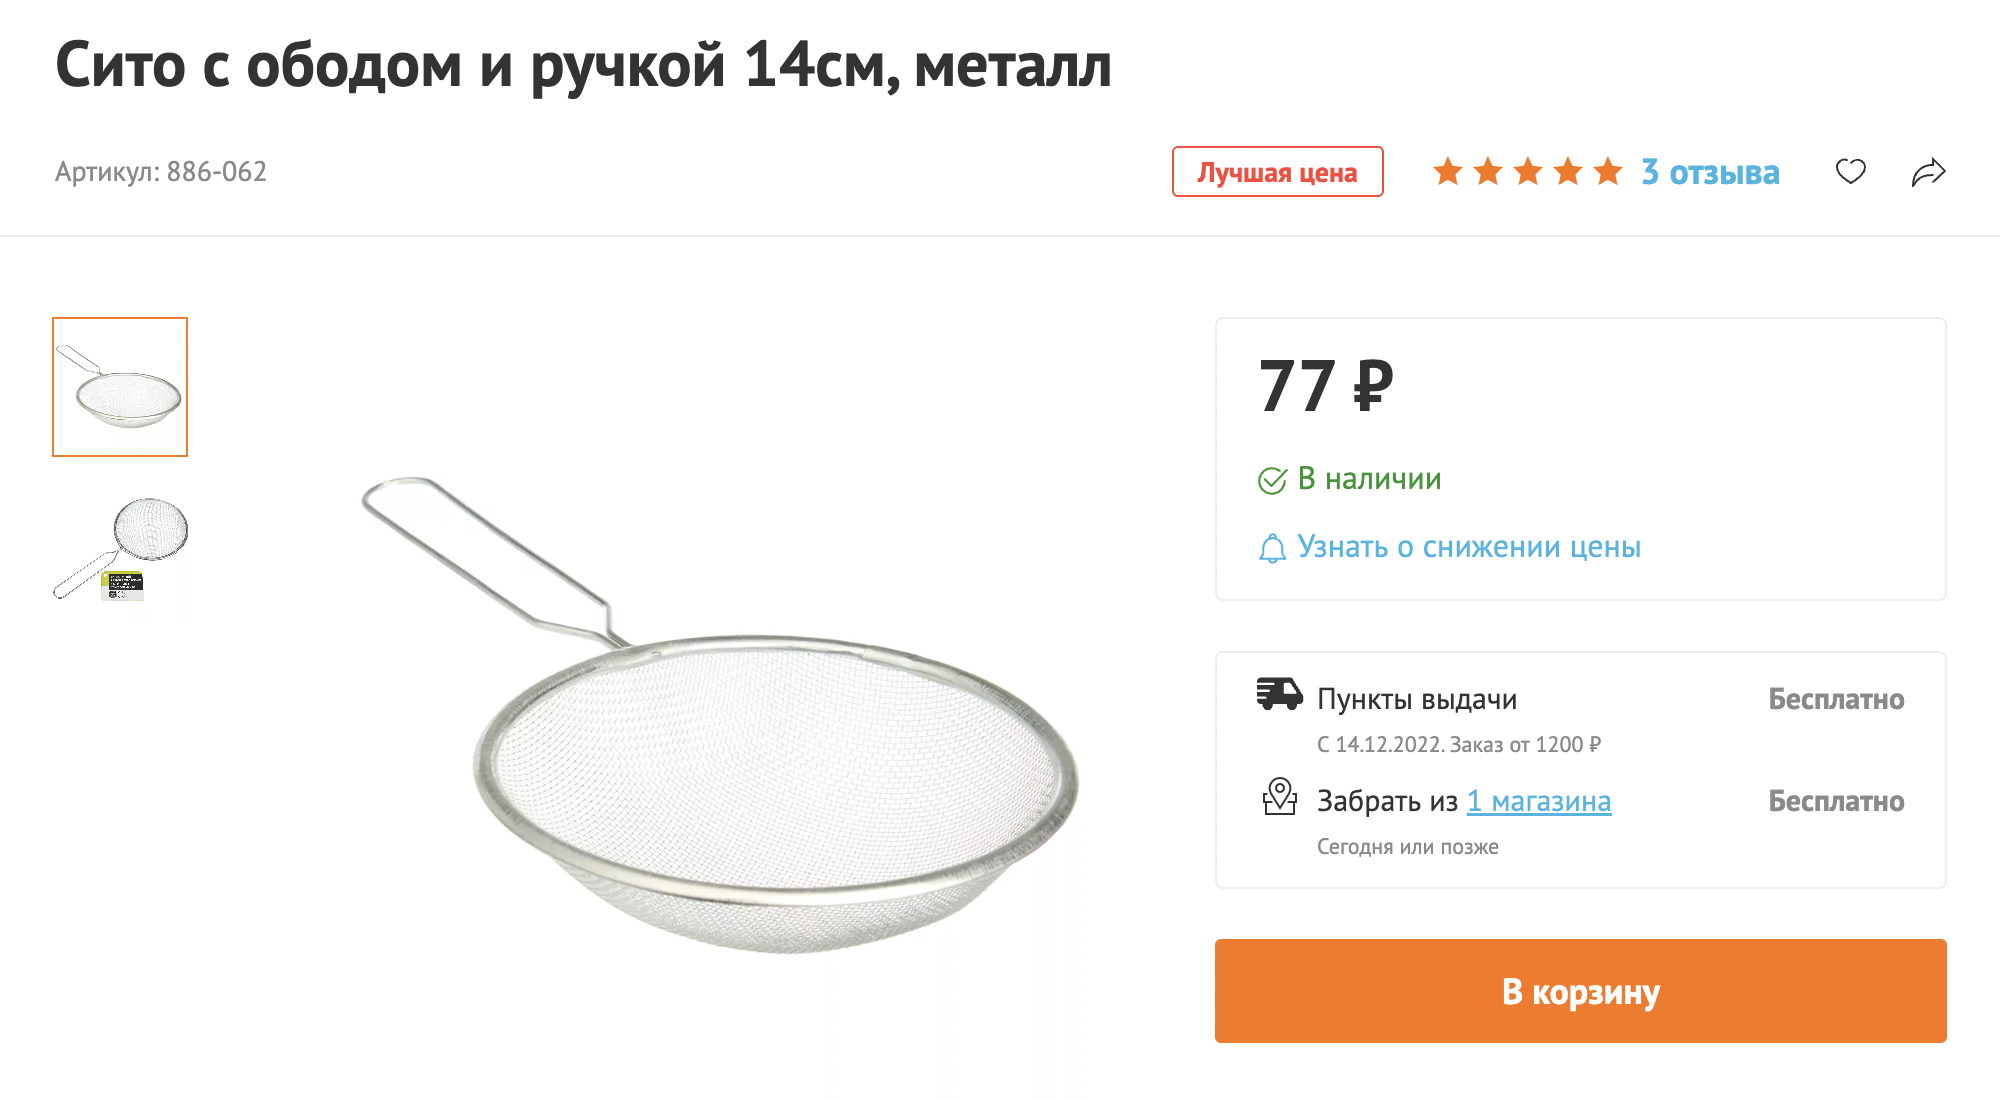 Для просеивания помета использовала такое металлическое сито, которое купила в «Галмарте». Источник: galamart.ru